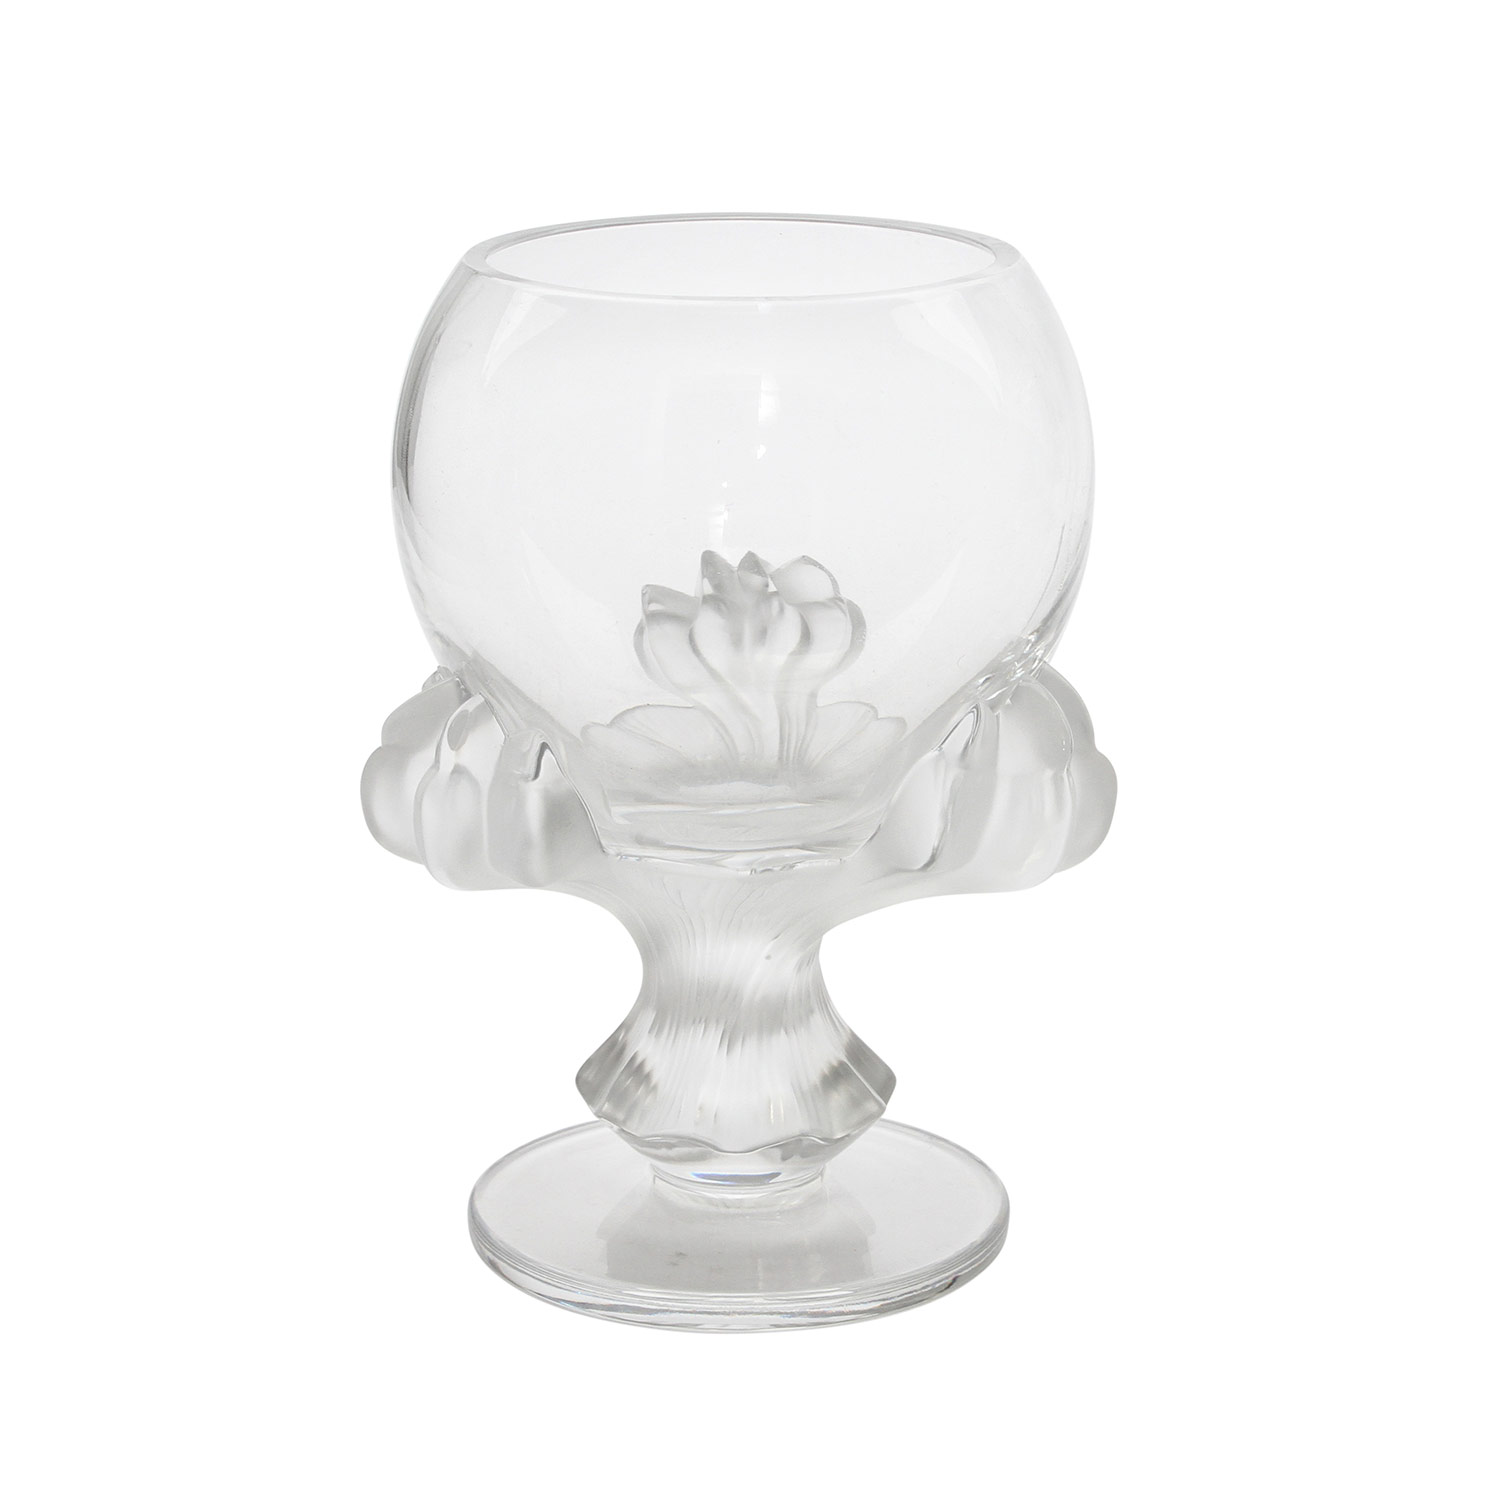 LALIQUE GLASPOKAL Frankreich, farbloses Kristallglas, von drei satinierten Klauenfüßen getragene, - Image 3 of 7